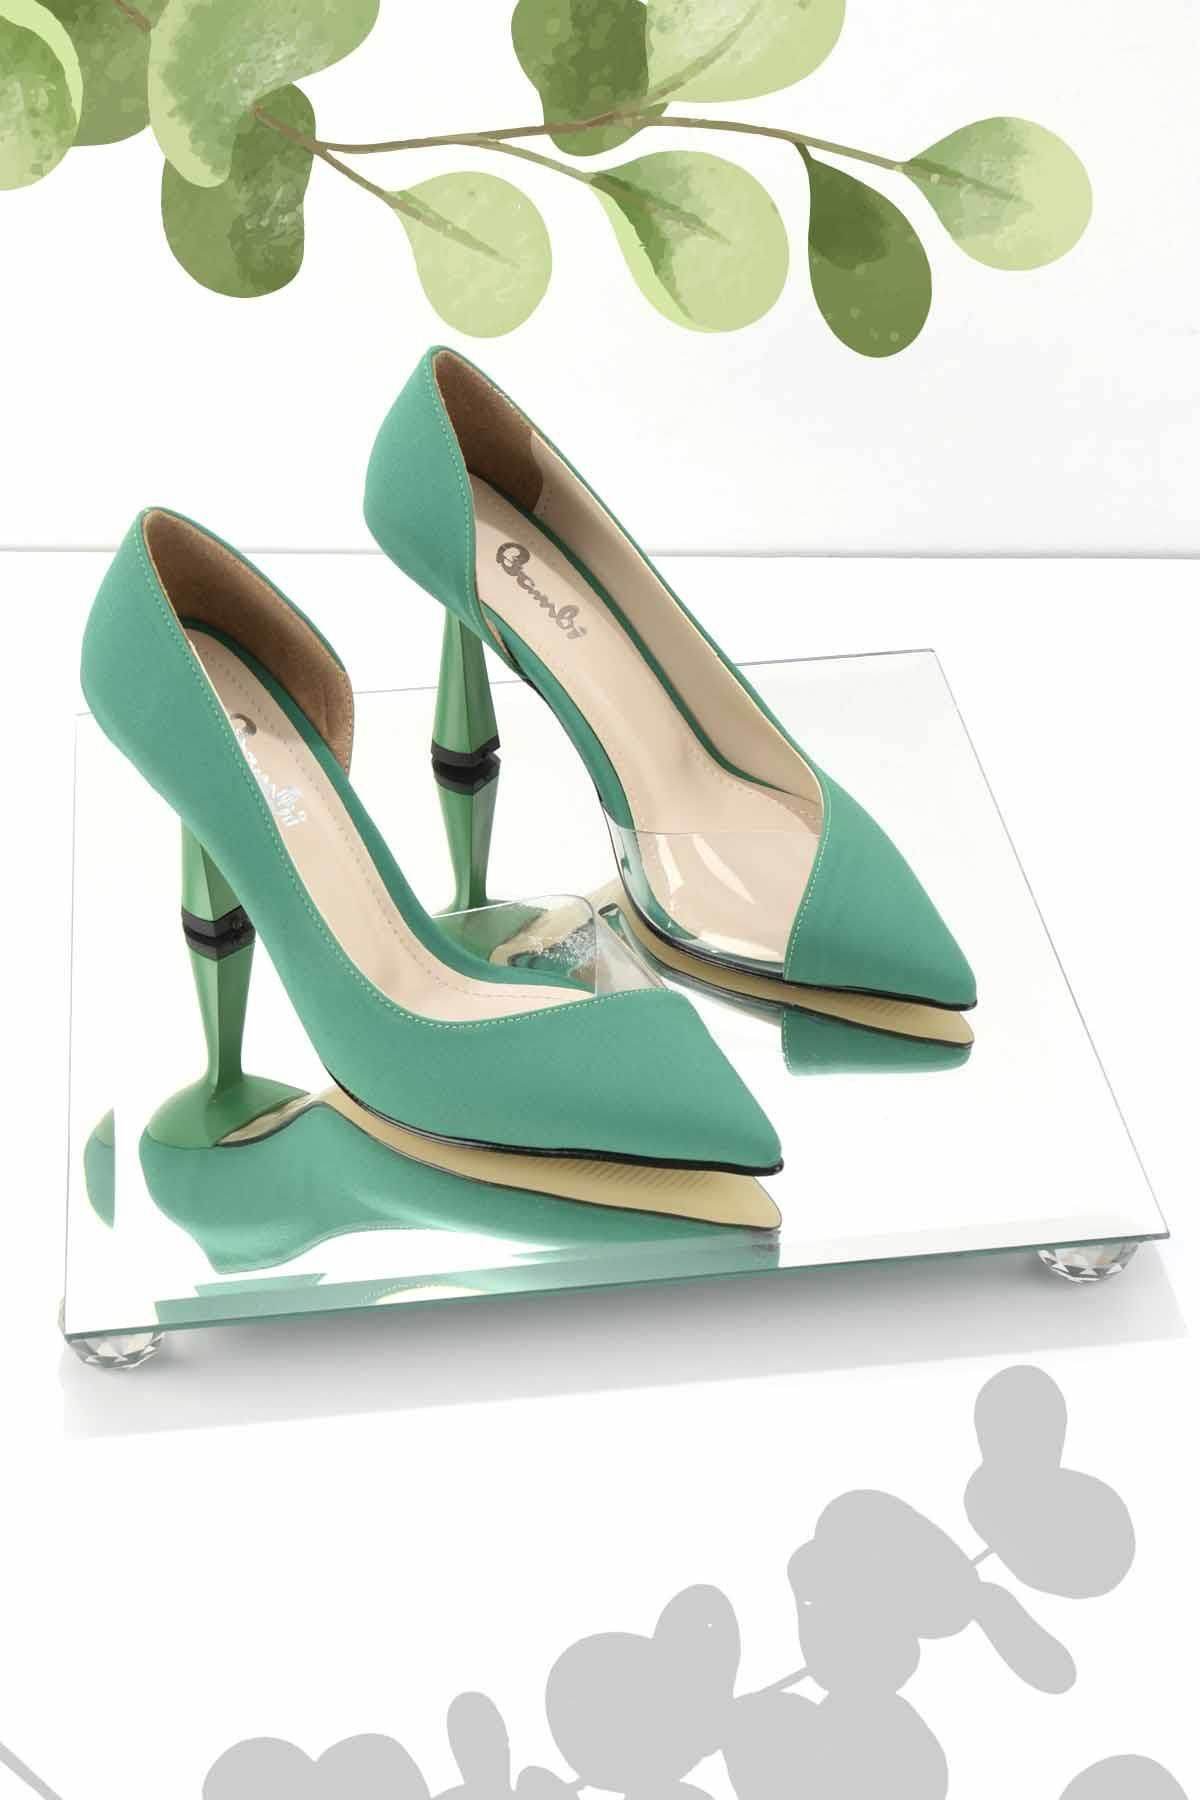 Bambi Mat Yeşil Saten Kadın Klasik Topuklu Ayakkabı K01992000938